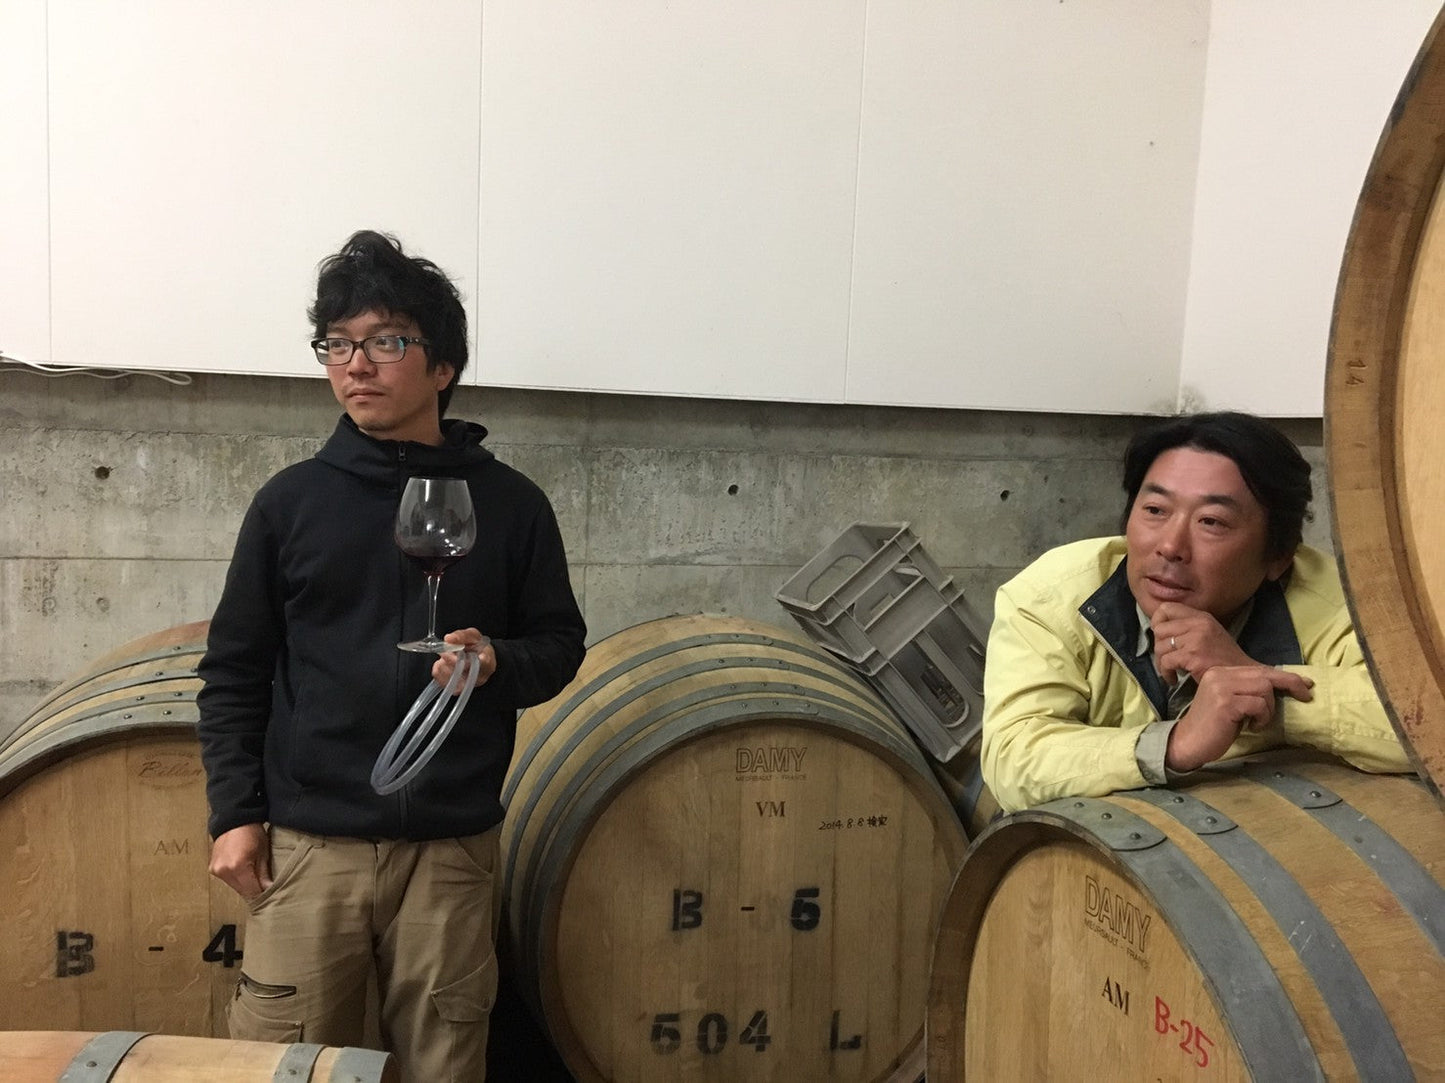 [日本ワイン]南向醸造 oretachi rouge 2022 赤 750ml